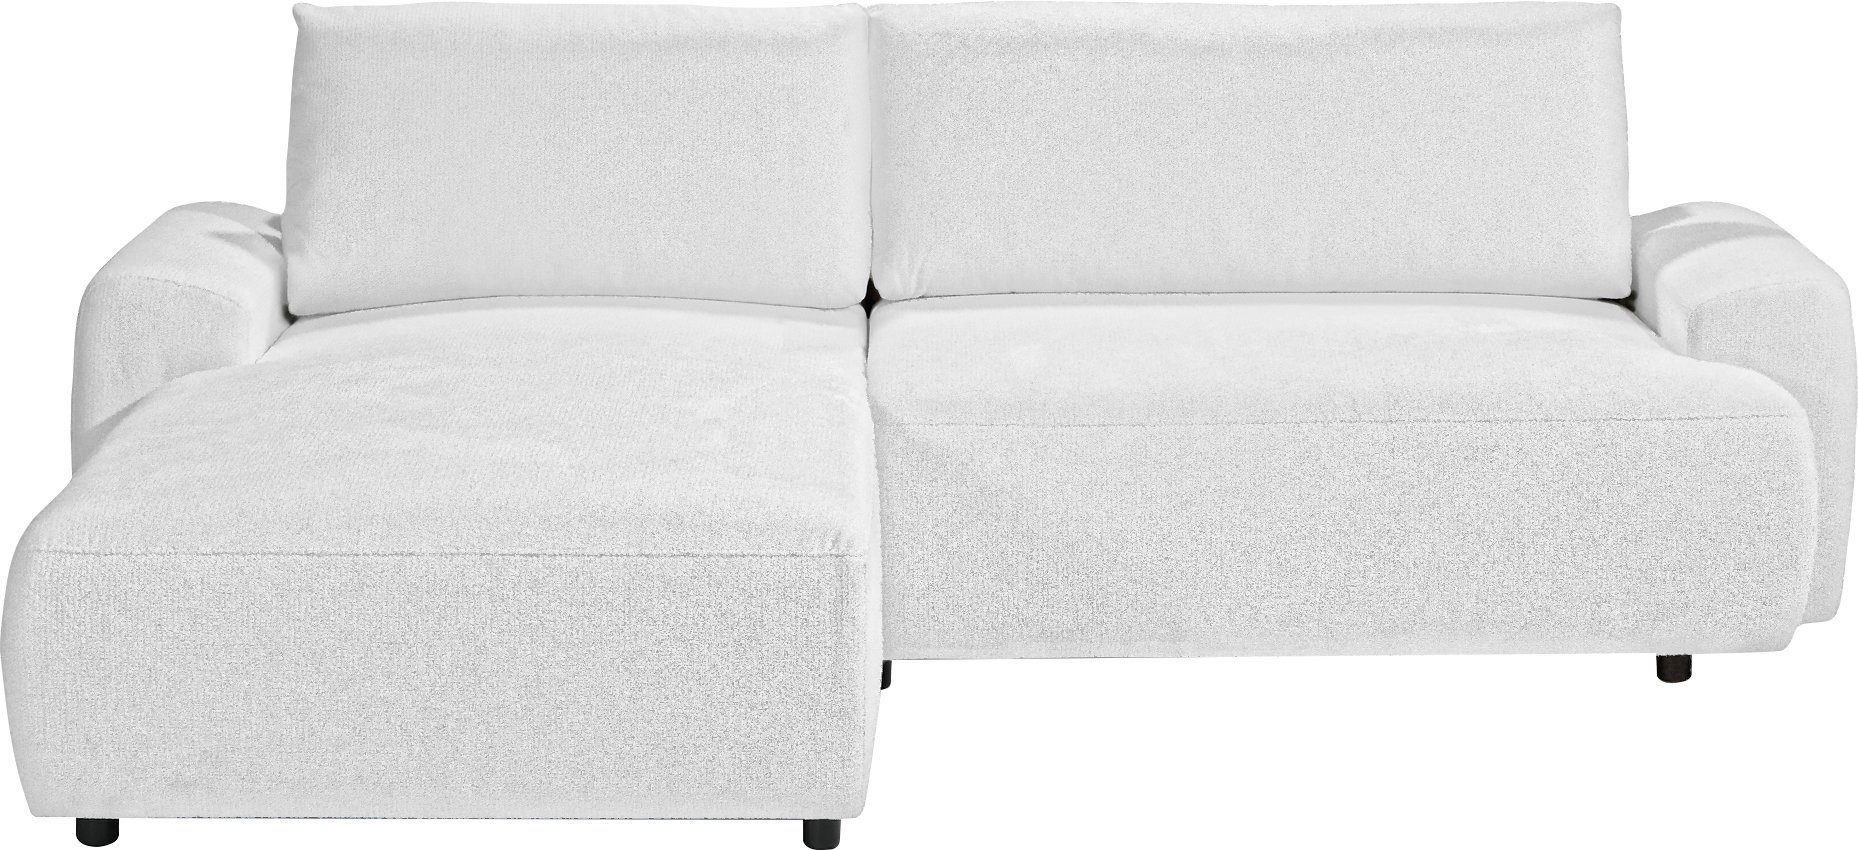 exxpo - sofa fashion Ecksofa, 2 Teile, in angenehmen Bezug, inklusive Bettfunktion und Bettkasten